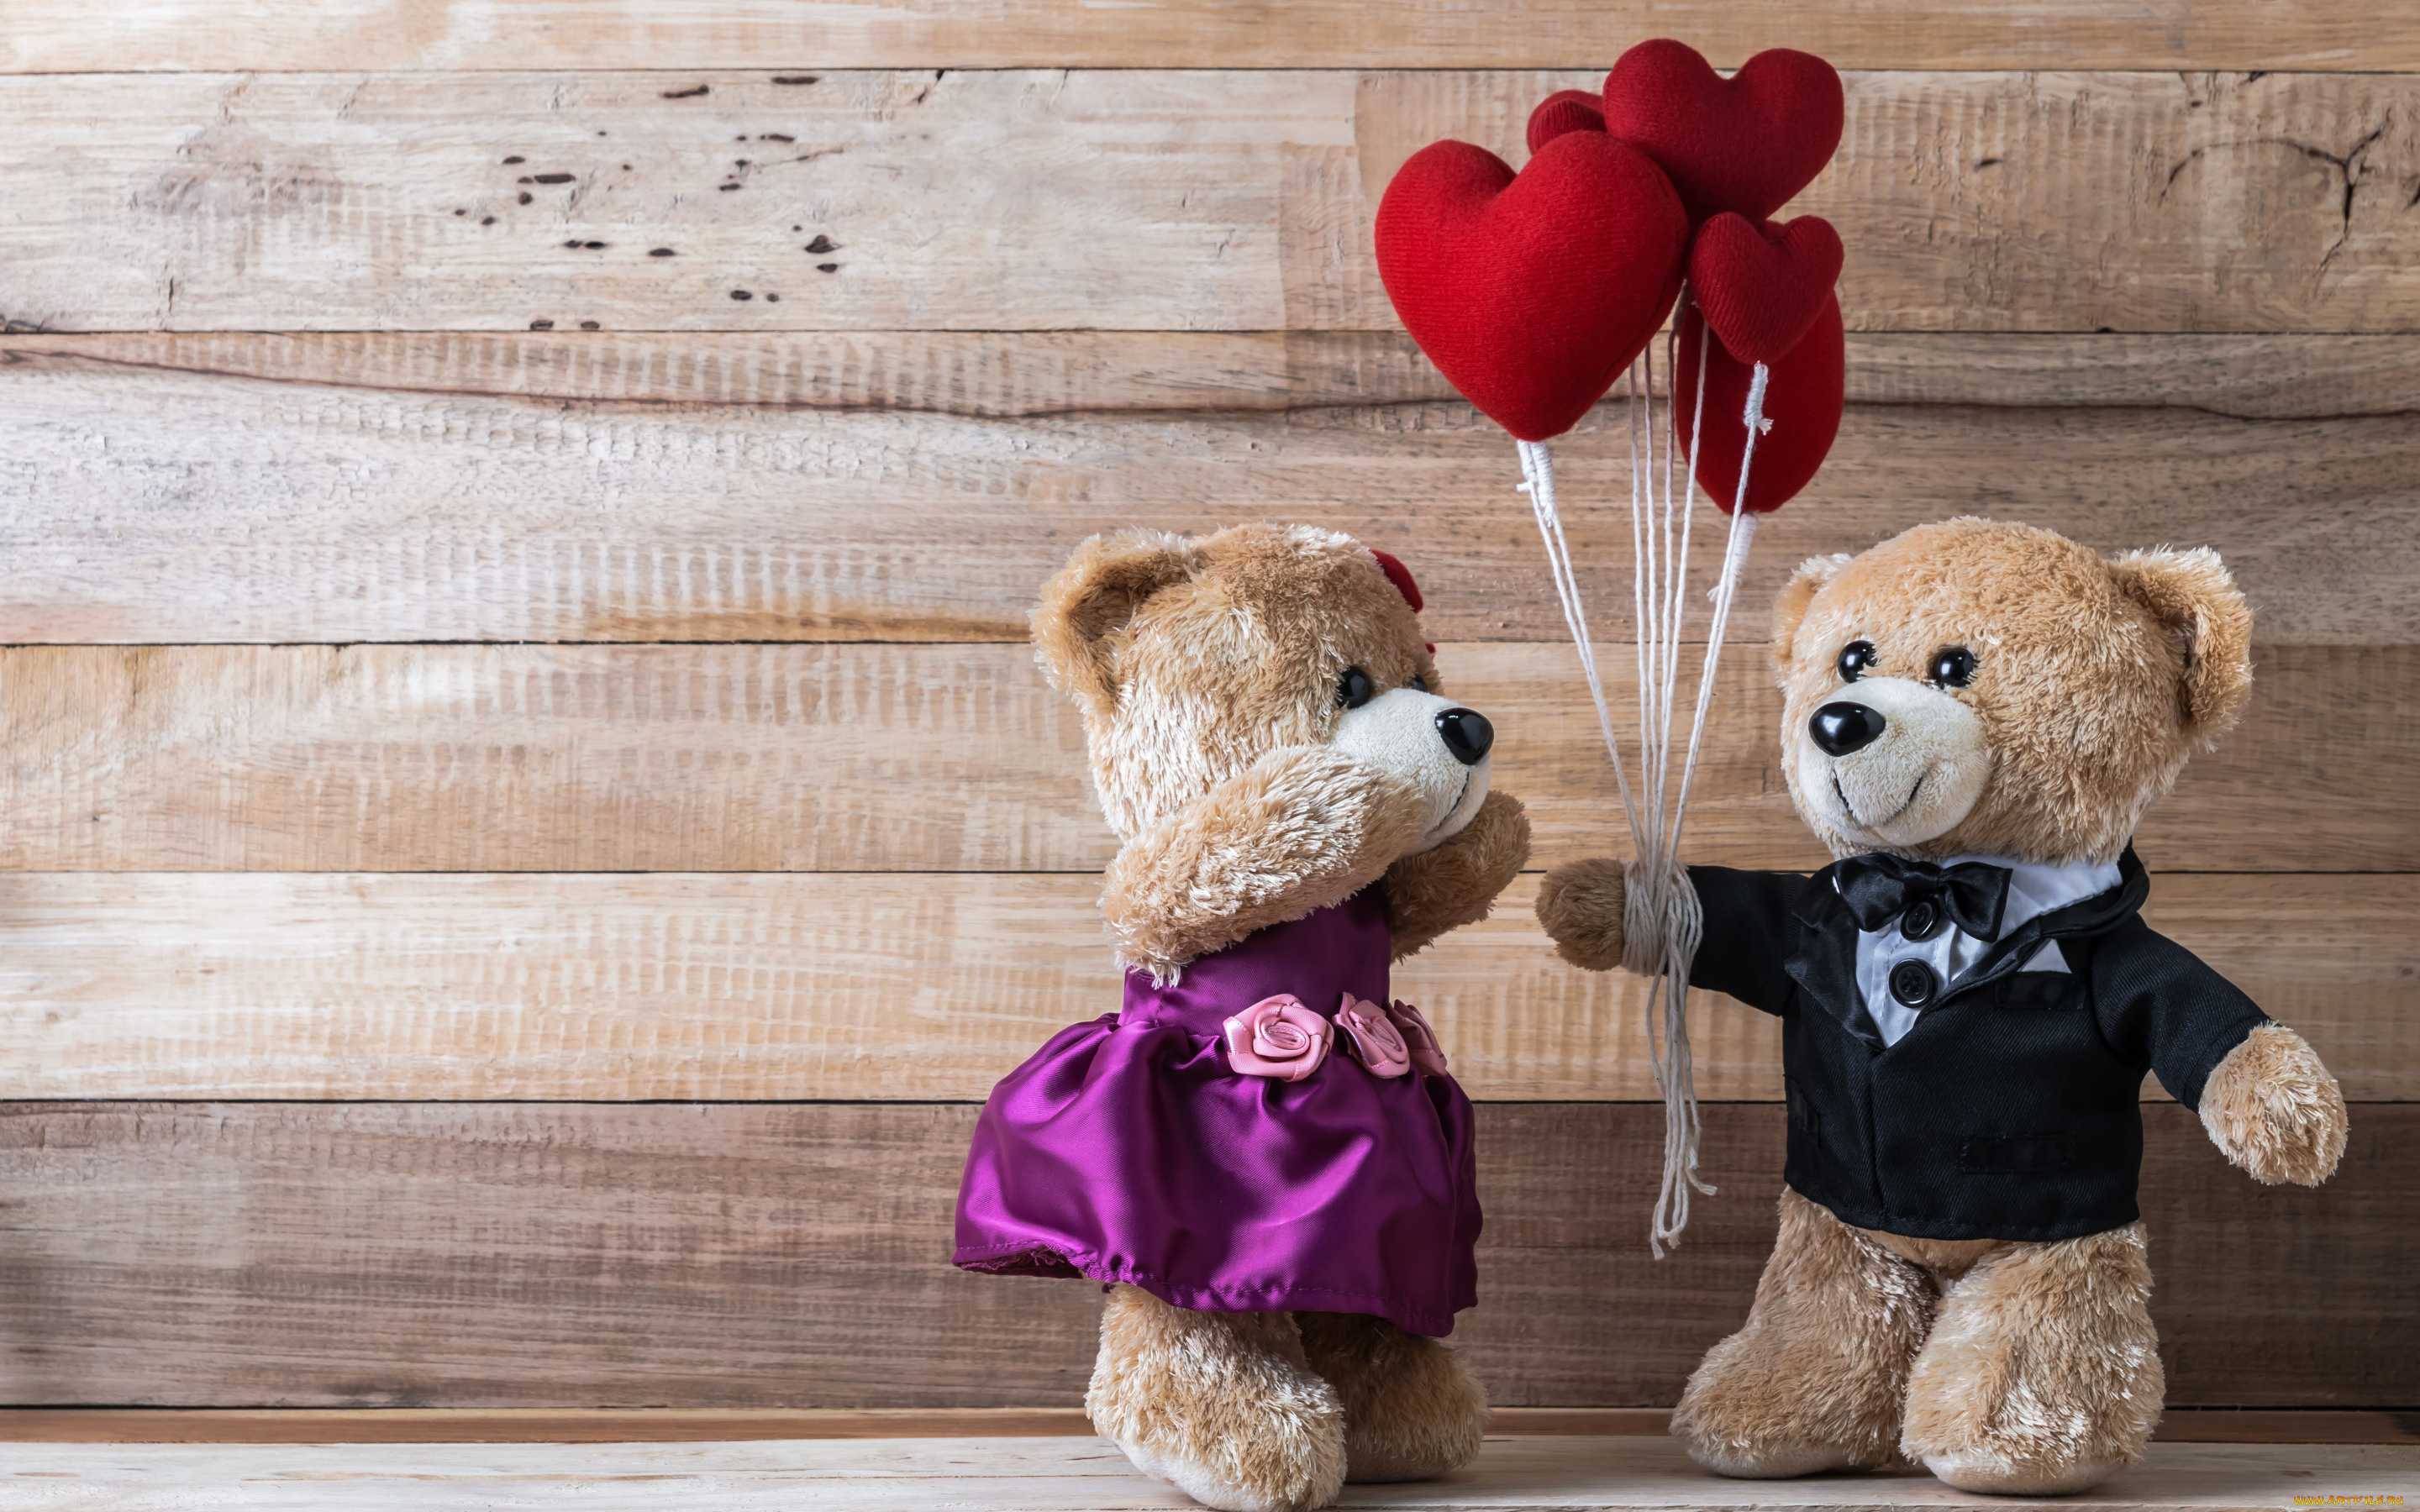 разное, игрушки, cute, wood, love, heart, любовь, gift, romantic, valentine's, day, bear, медведь, teddy, red, игрушка, сердце, сердечки